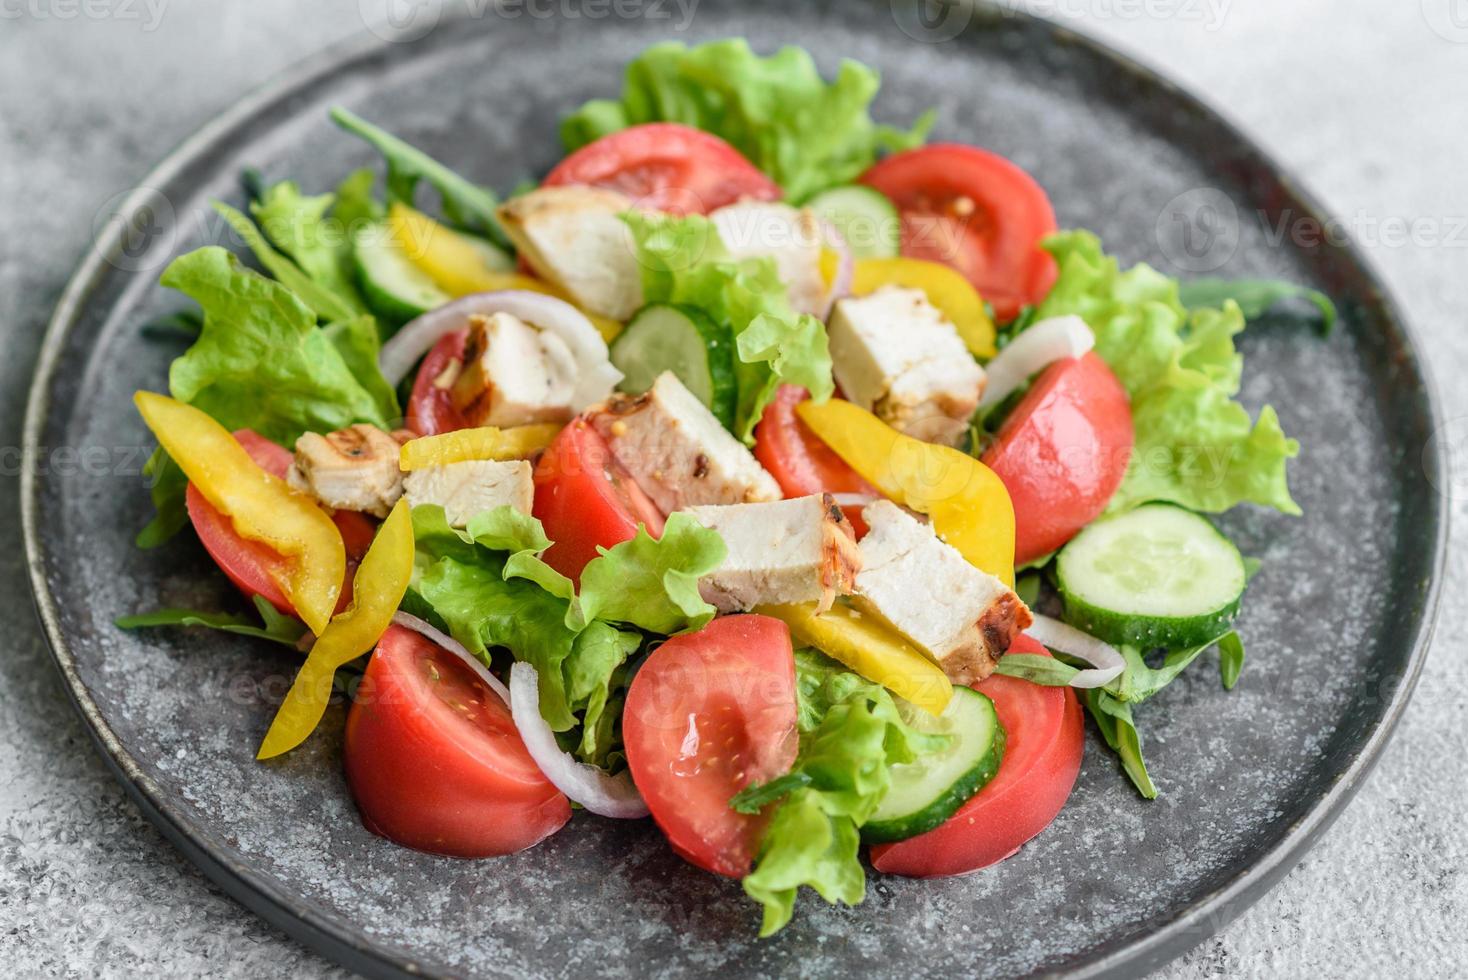 verse heerlijke salade met kip, tomaat, komkommer, uien en greens met olijfolie foto